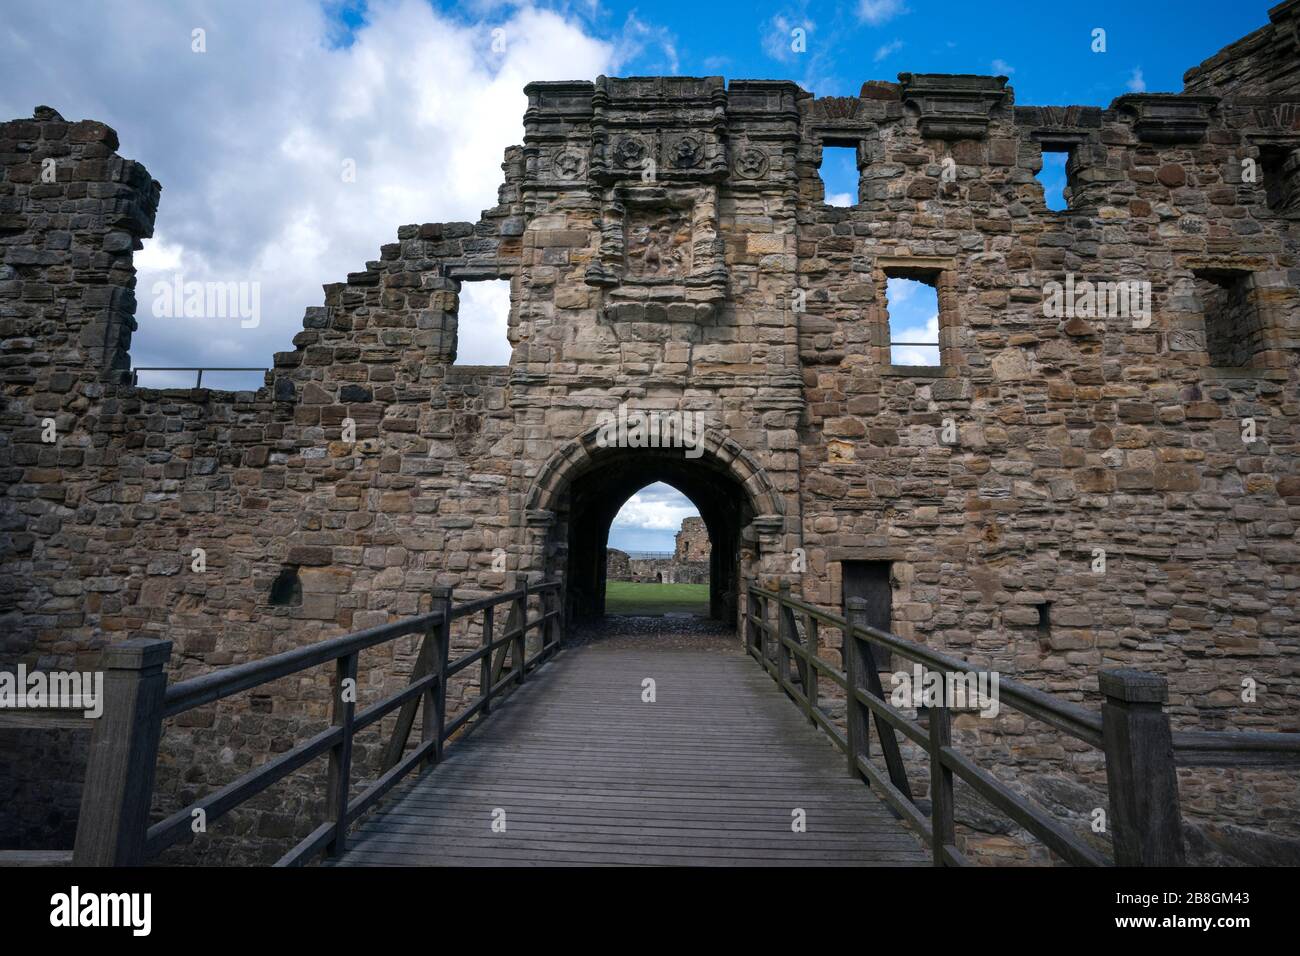 Pont-levis menant aux ruines du château de St. Andrews datant du XIIIe  siècle, un tirage touristique populaire dans cette célèbre ville  universitaire, St. Andrews, Écosse Photo Stock - Alamy